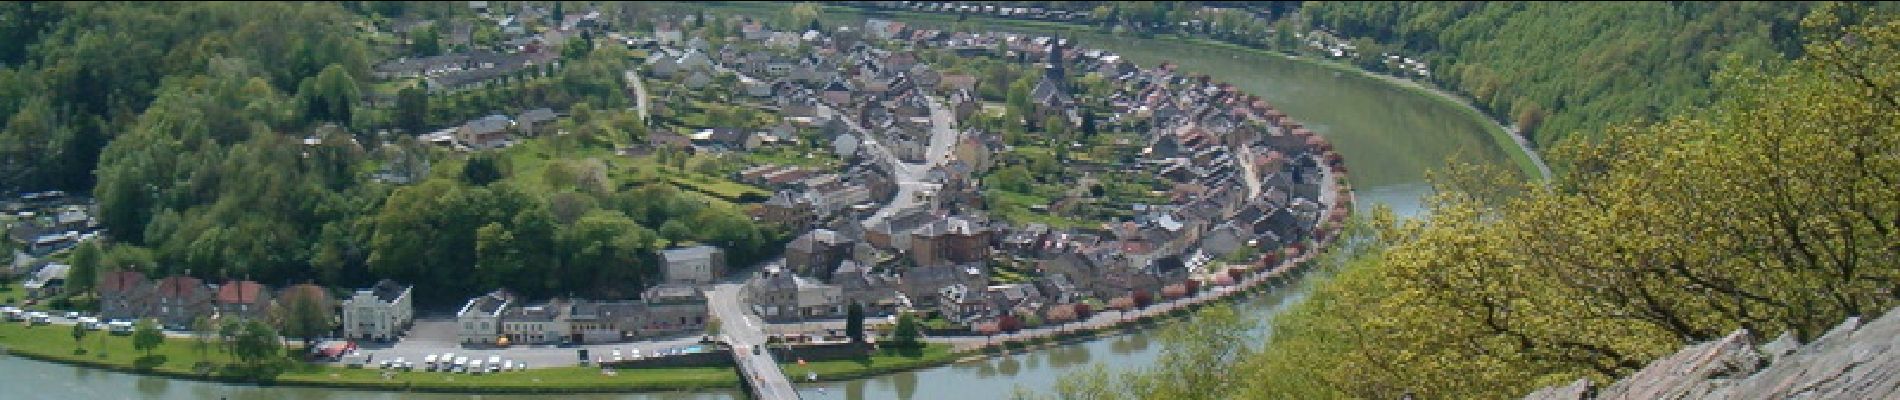 Randonnée Marche Monthermé - De Monthermé à Bogny sur Meuse par les sentiers de crêtes - Photo